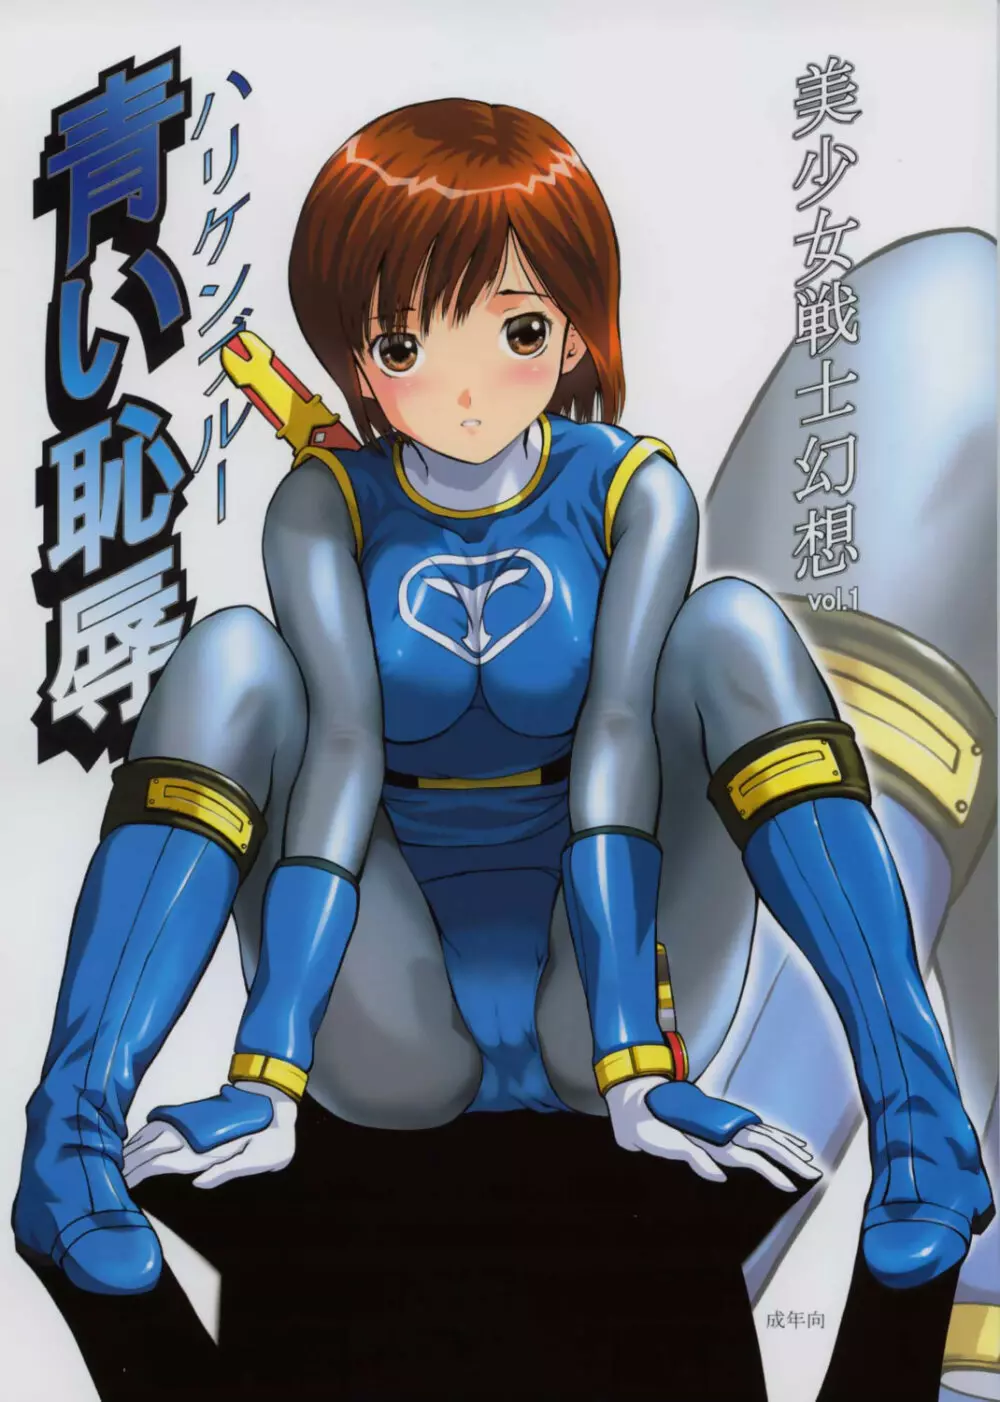 美少女戦士幻想Vol.1 ハリケンブルー青い恥辱